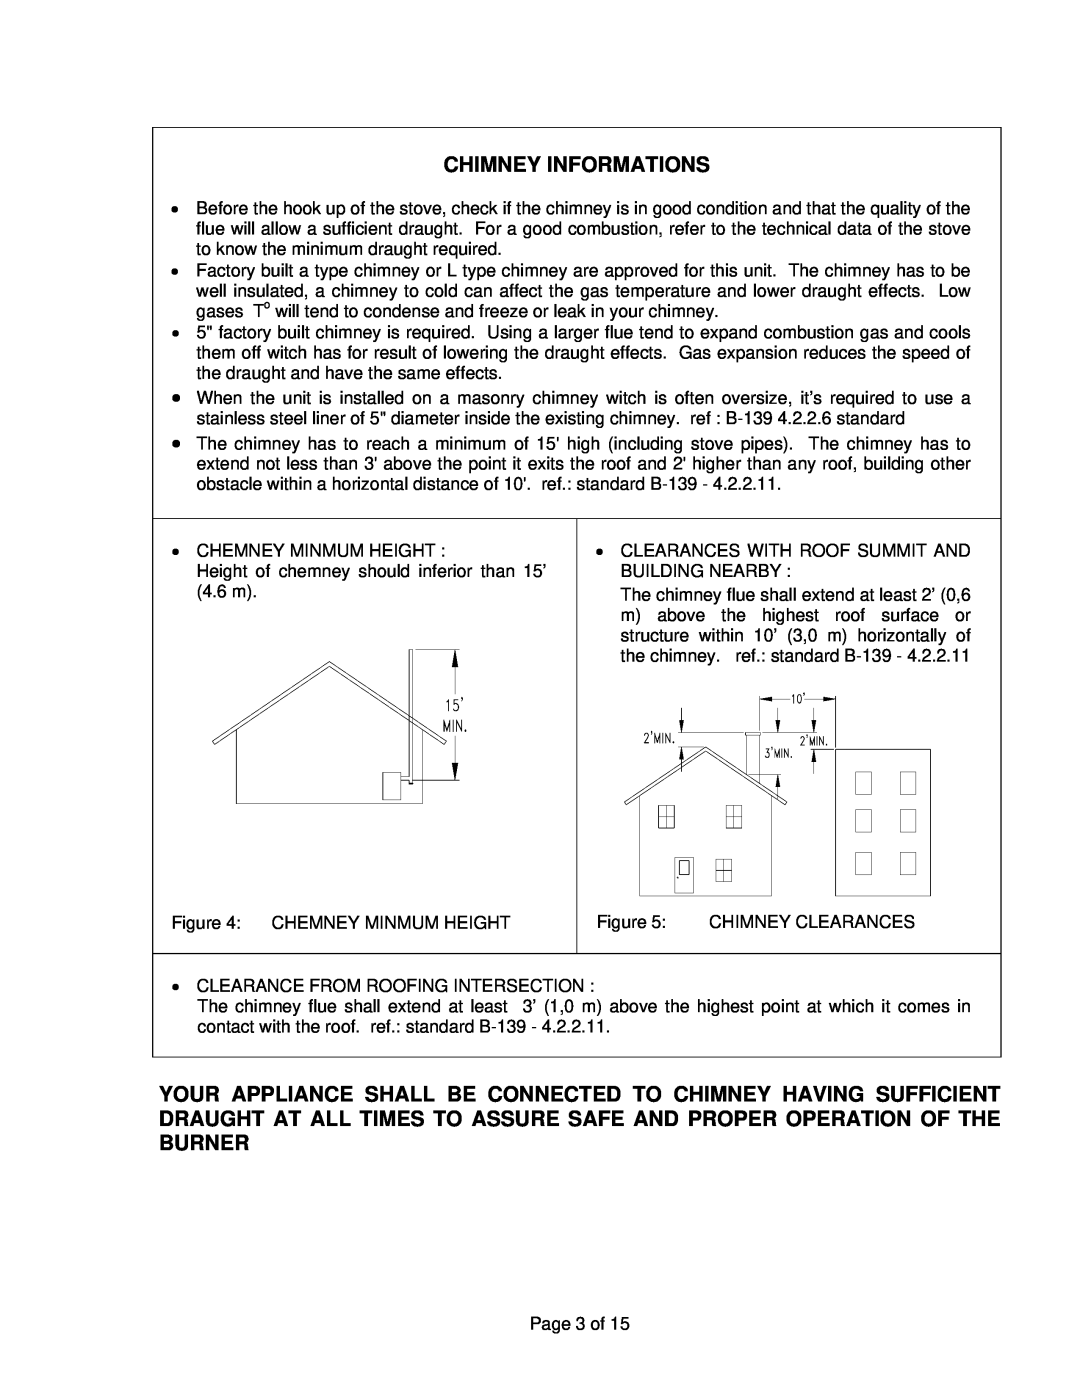 Drolet ALASKA 2000 manual Chimney Informations 